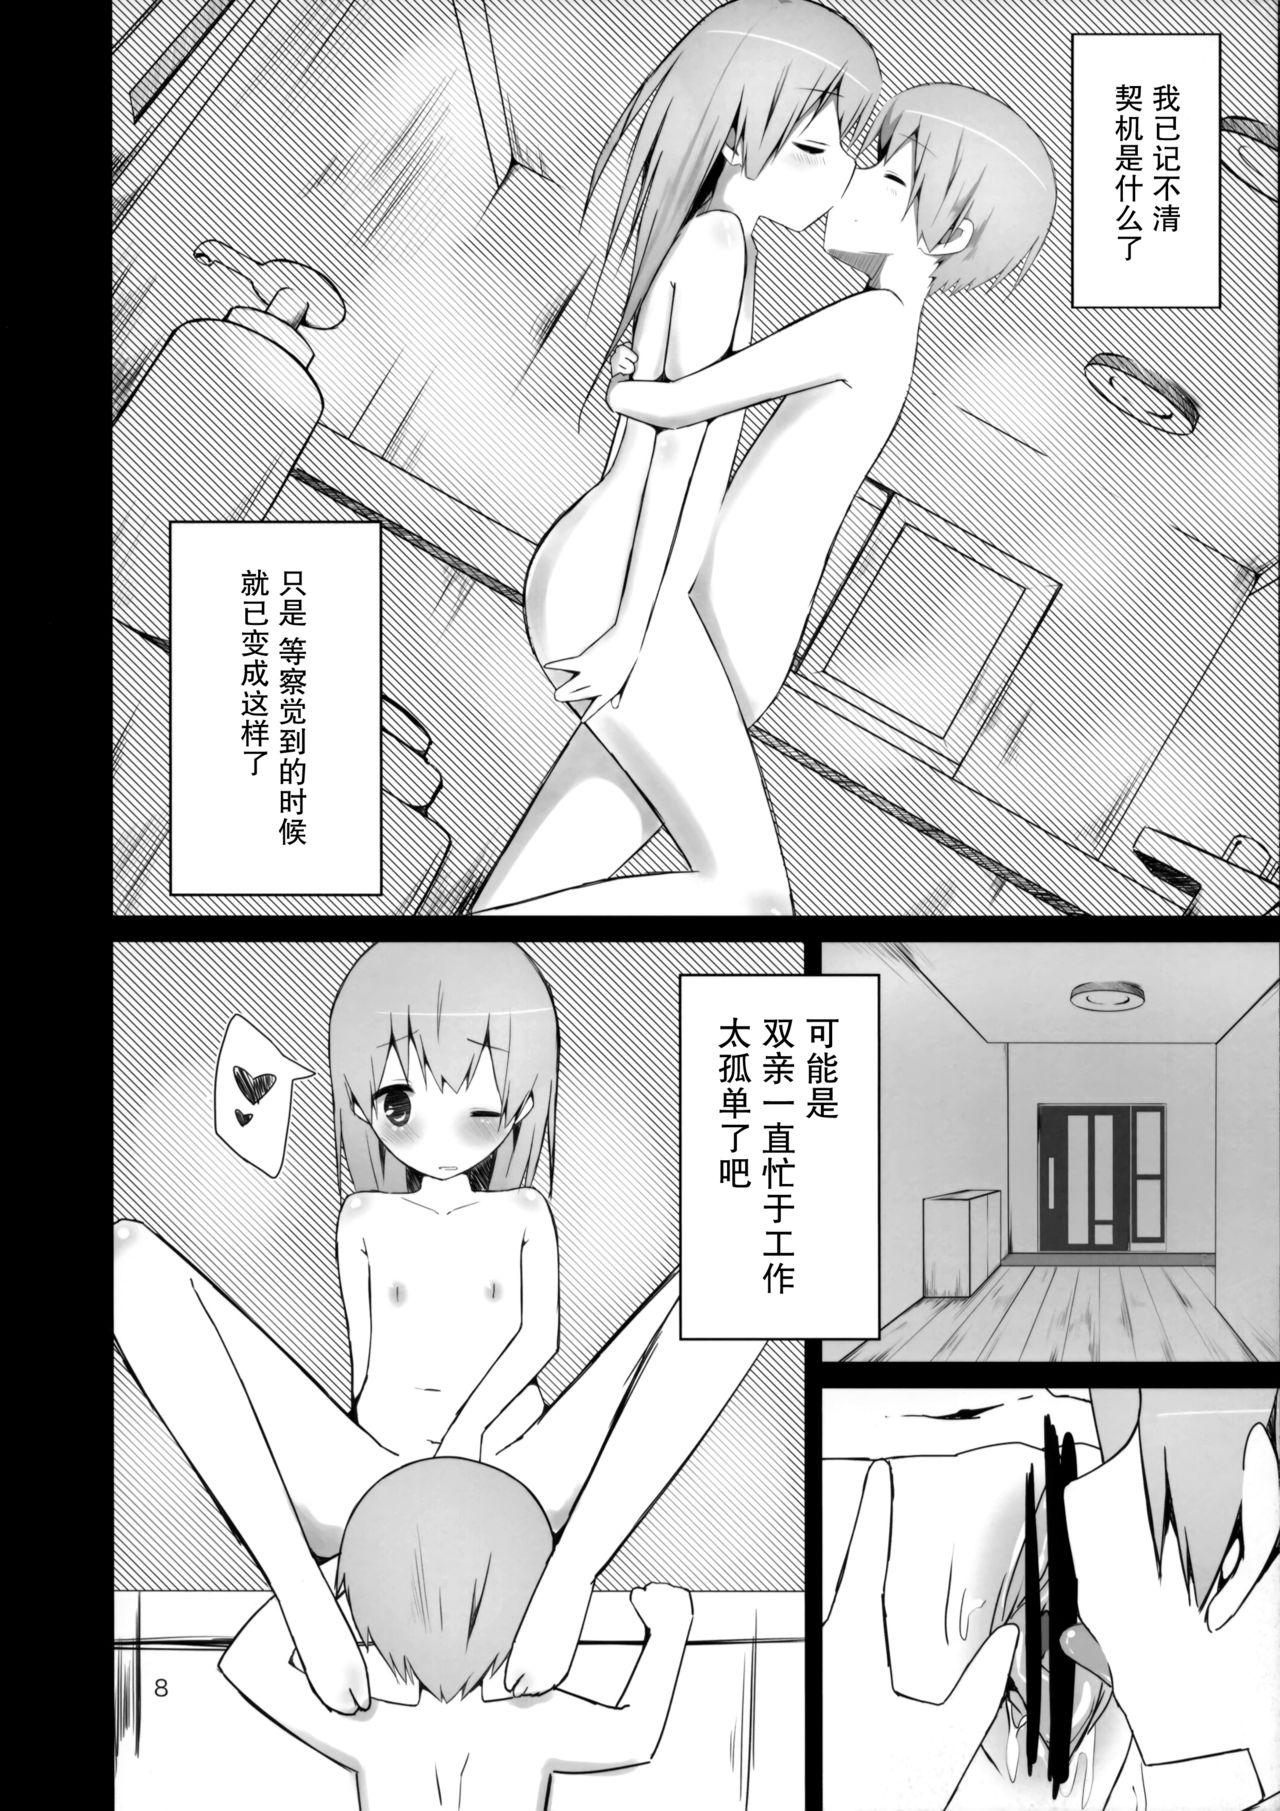 Missionary Position Porn Watashi ni wa Futago no Ani ga Orimashite. - Original Action - Page 8